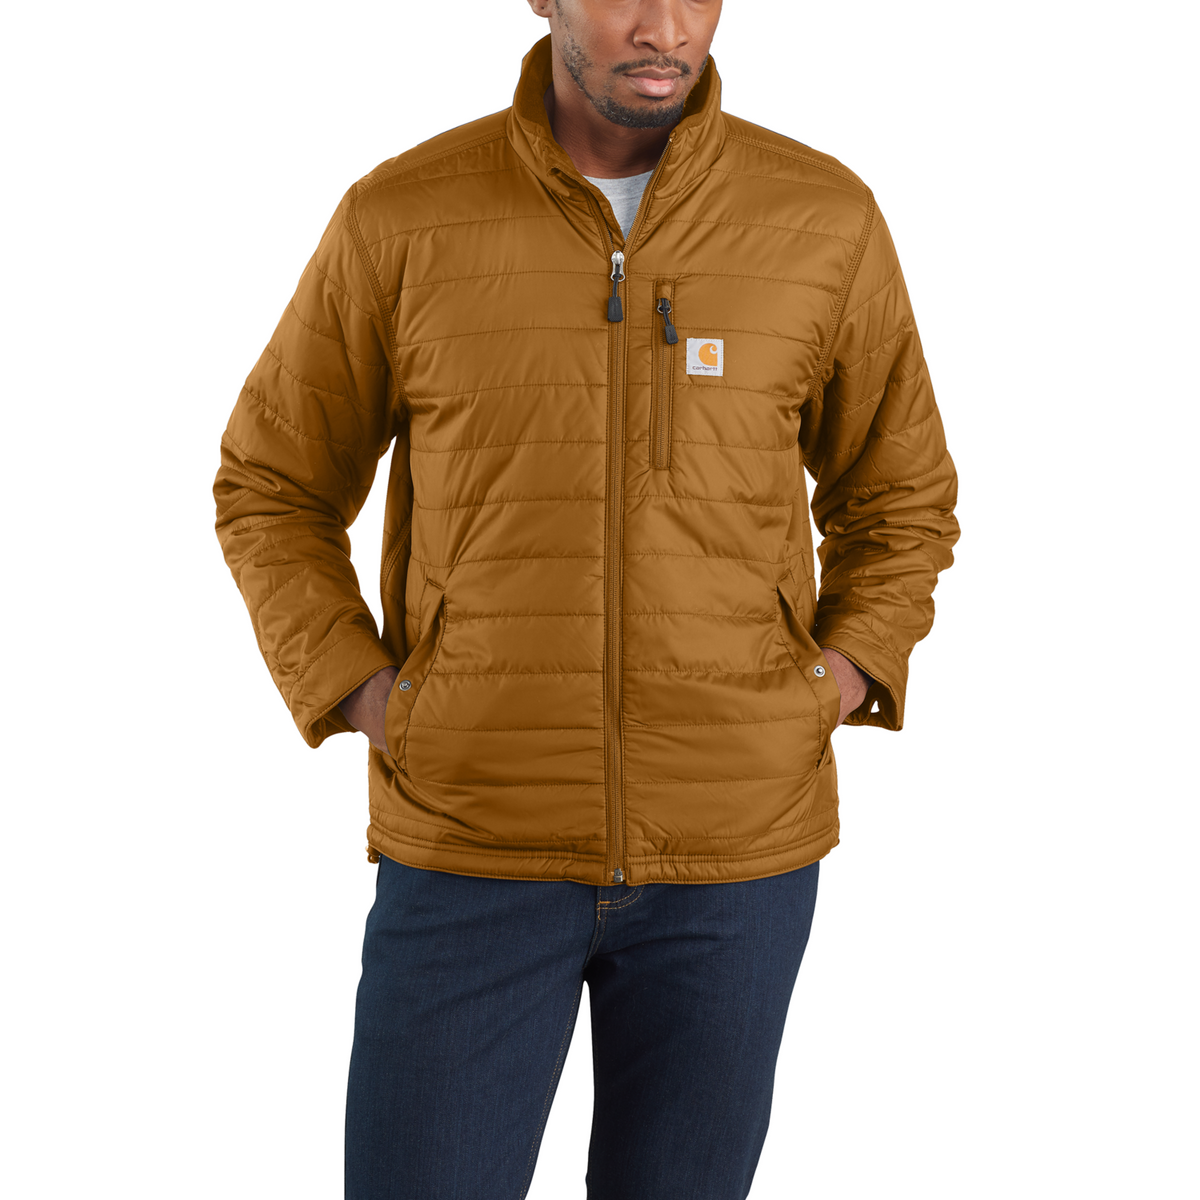 Carhartt Lightweight Insulated Jacket